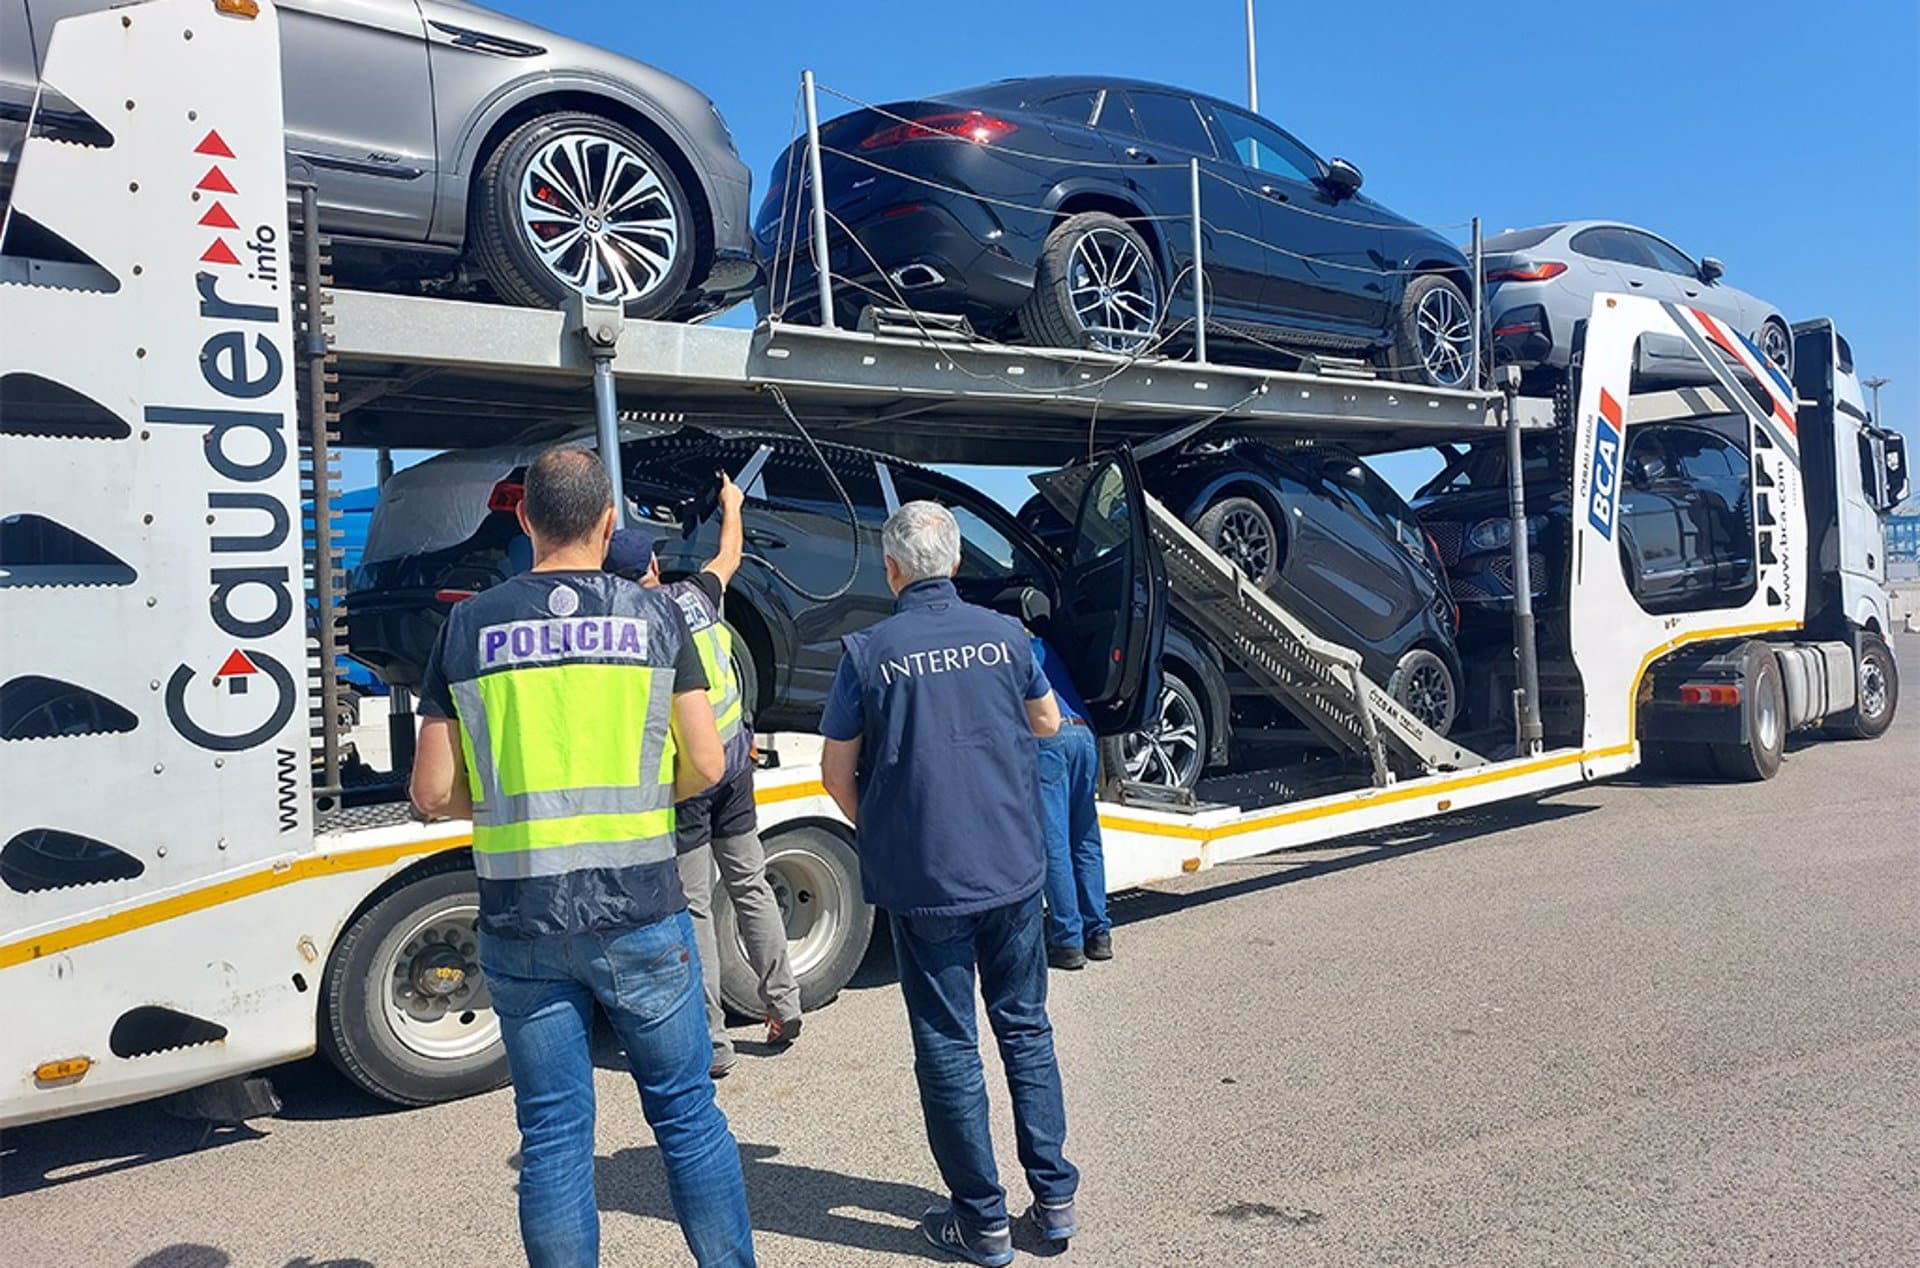 Recuperados en España 191 vehículos robados en una operación europea por valor de 35 millones